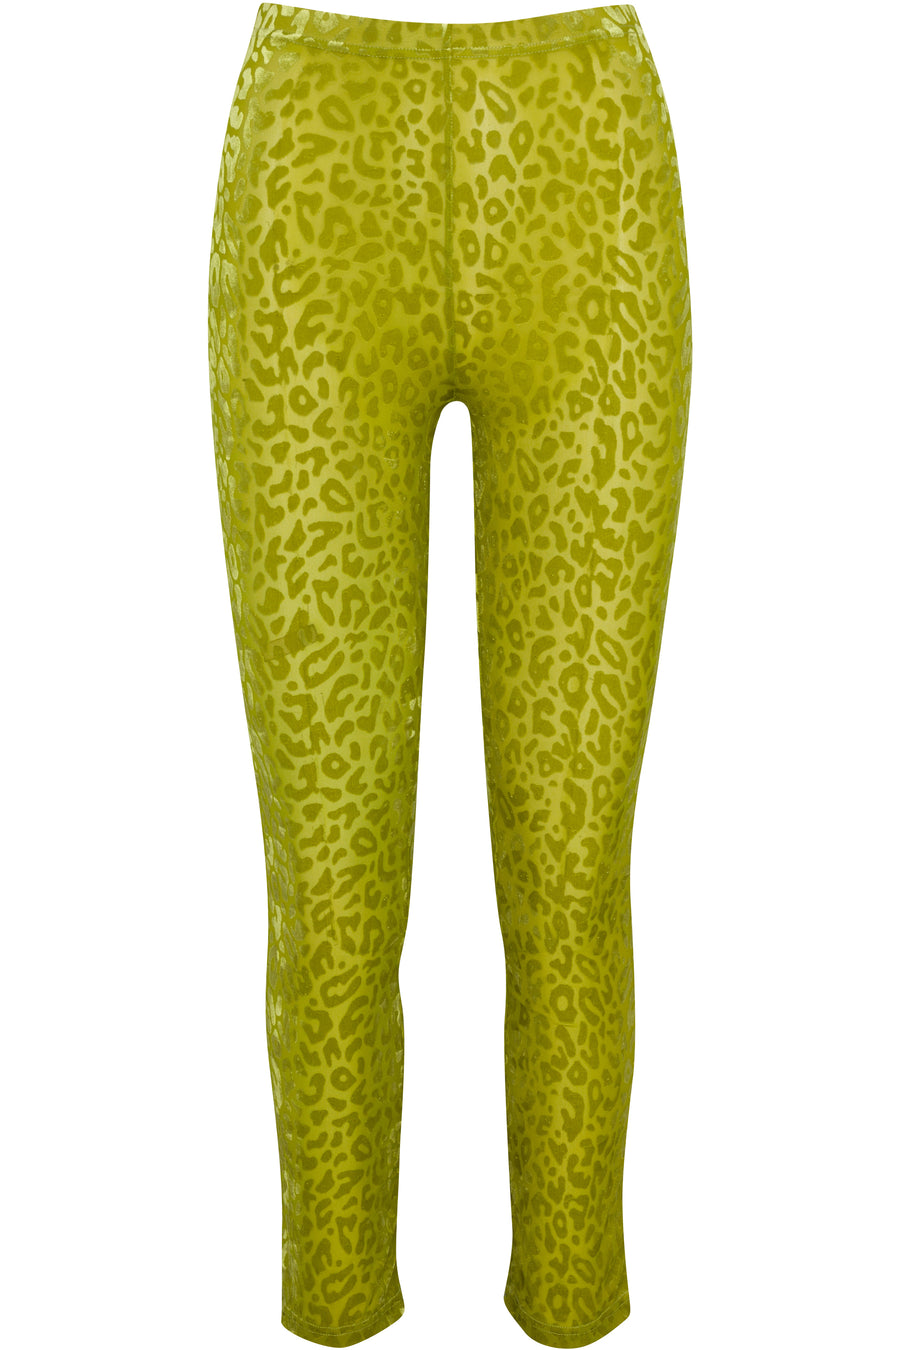 Booger leopard Pants